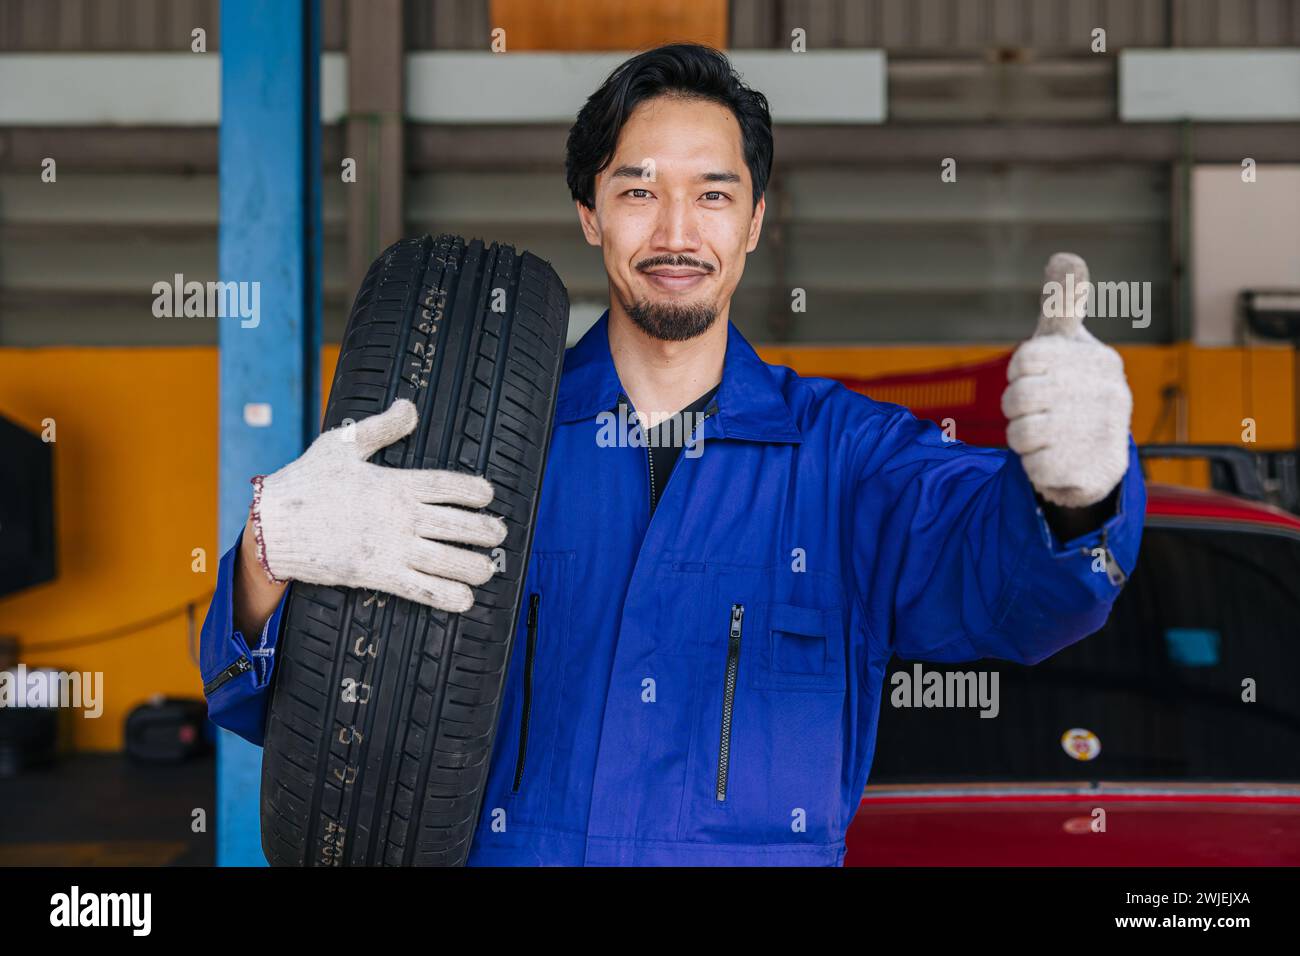 Asiatische japanische männliche Mechaniker Arbeiter Porträt in Auto Service Werkstatt Auto Reifen Wartungszentrum ersetzen reparieren Auto Teil Stockfoto